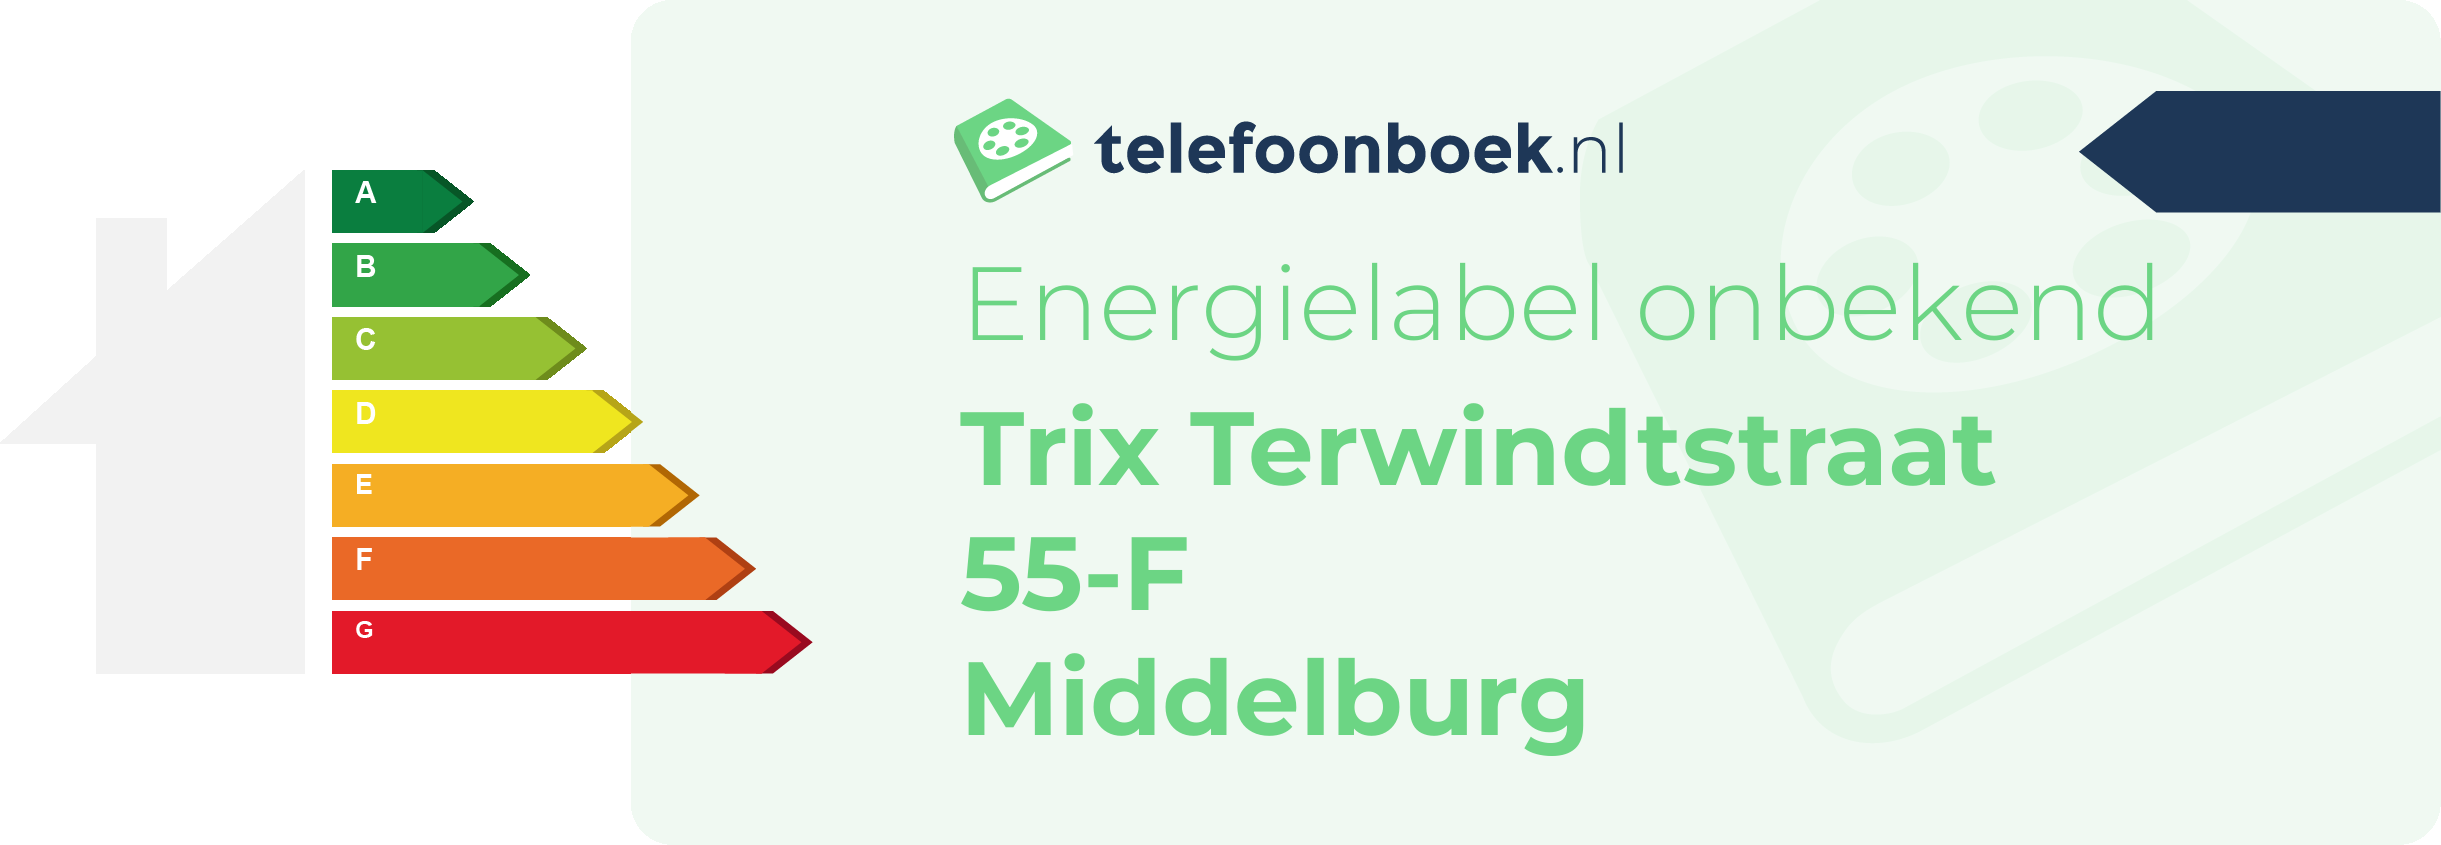 Energielabel Trix Terwindtstraat 55-F Middelburg